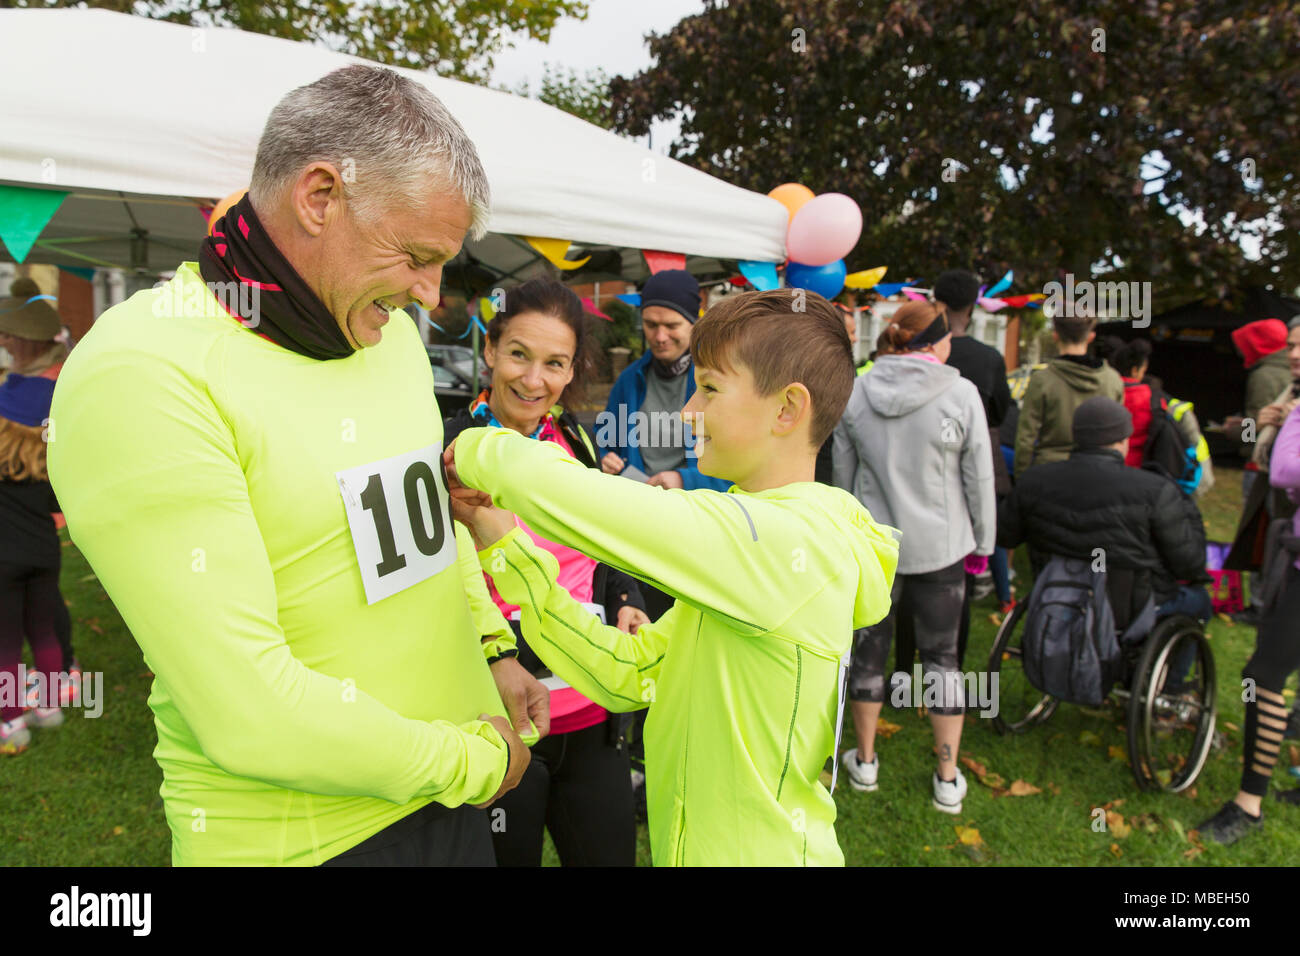 Family runners pinning marathon bibs, preparing for charity run in park Stock Photo